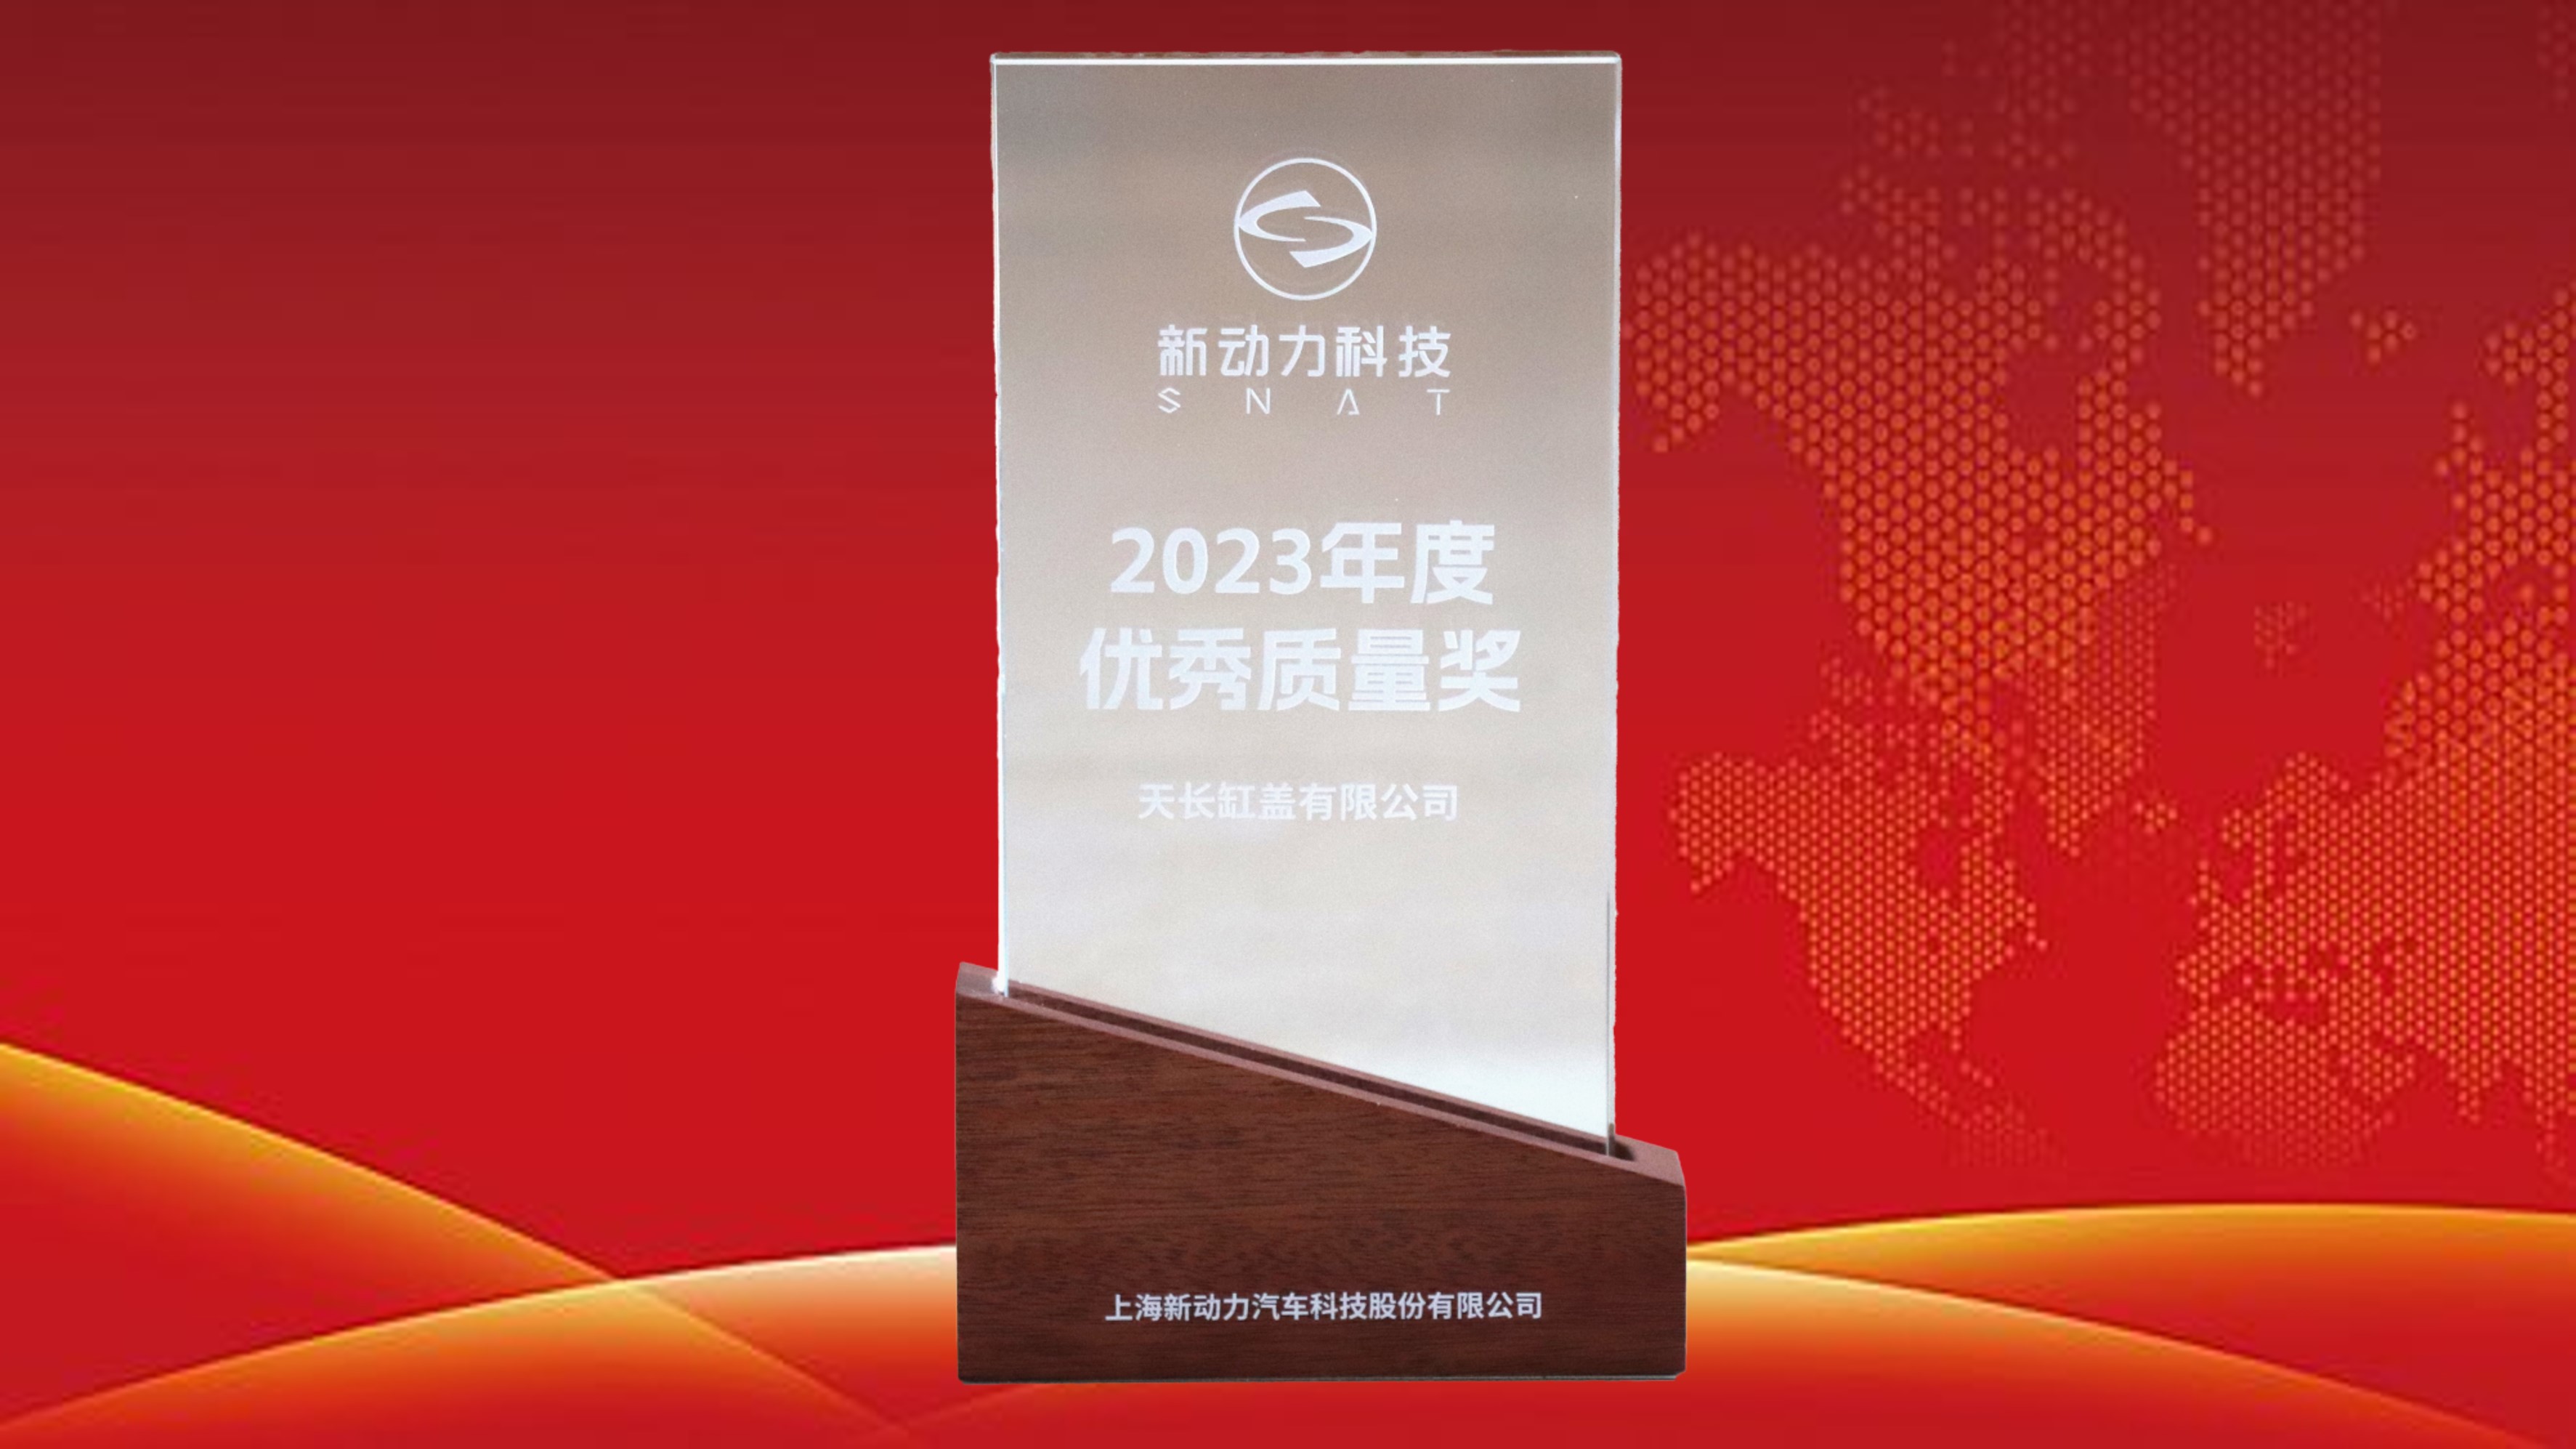 上海新动力“优秀质量奖”喜报